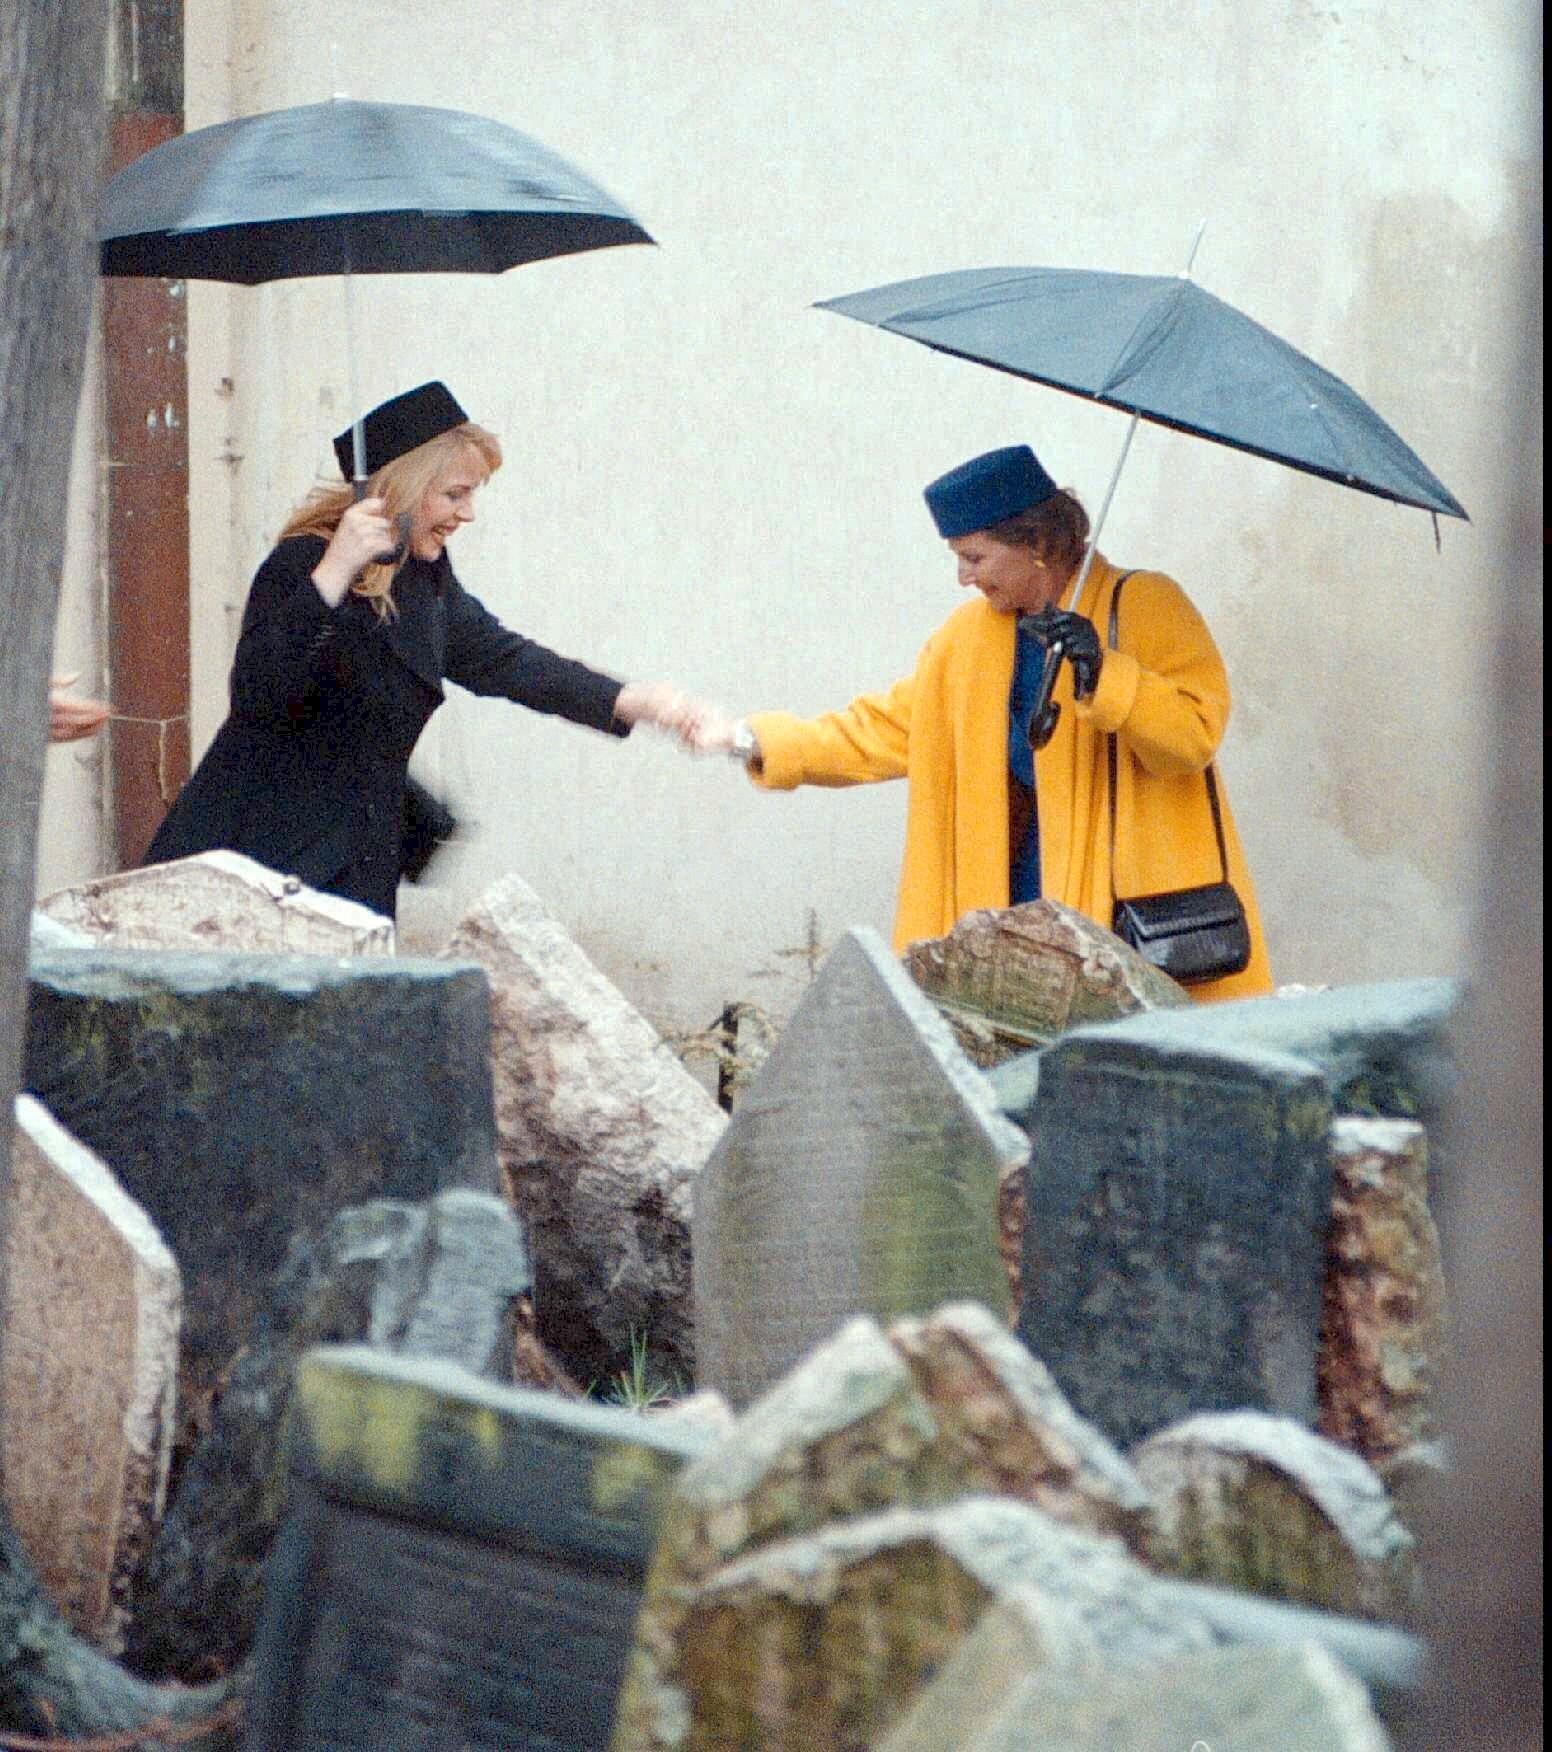 Dronning Sonja besøkte i 1997 den jødiske gravplassen i Praha der biter av gravstein skal fraktes dersom det dukker opp flere. Her hjelper dronningen Dagmar Havlova, konen til Vaclac Havel, Tsjekkias daværende president, over en sølepytt. 